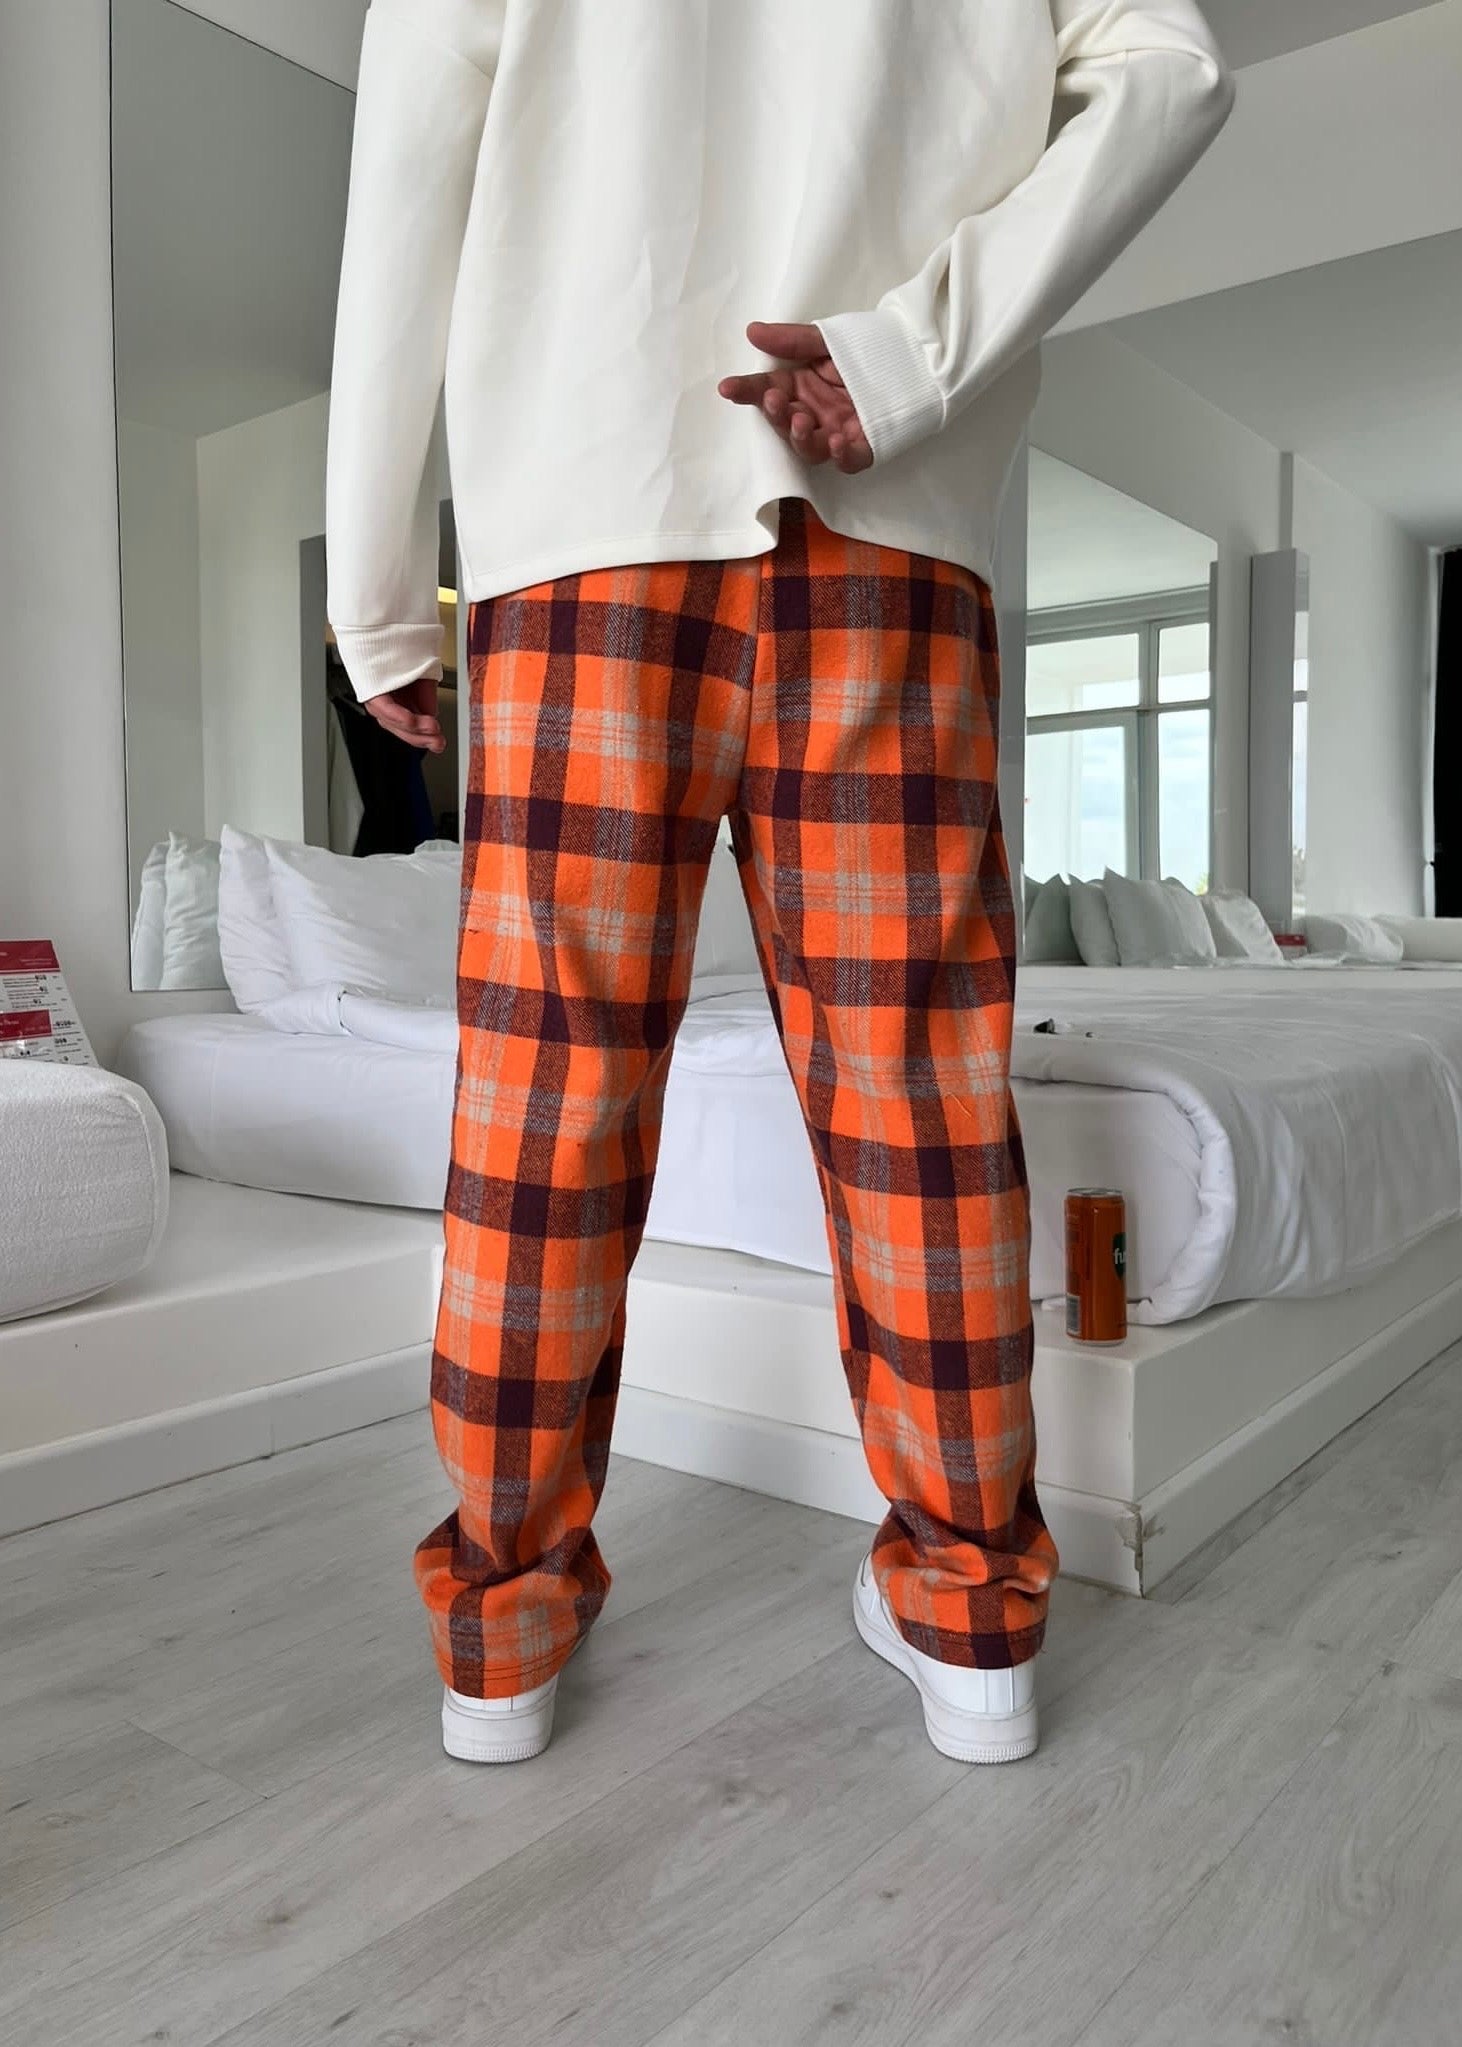 Pijama Orange And Black Pattern - Clothing Lab